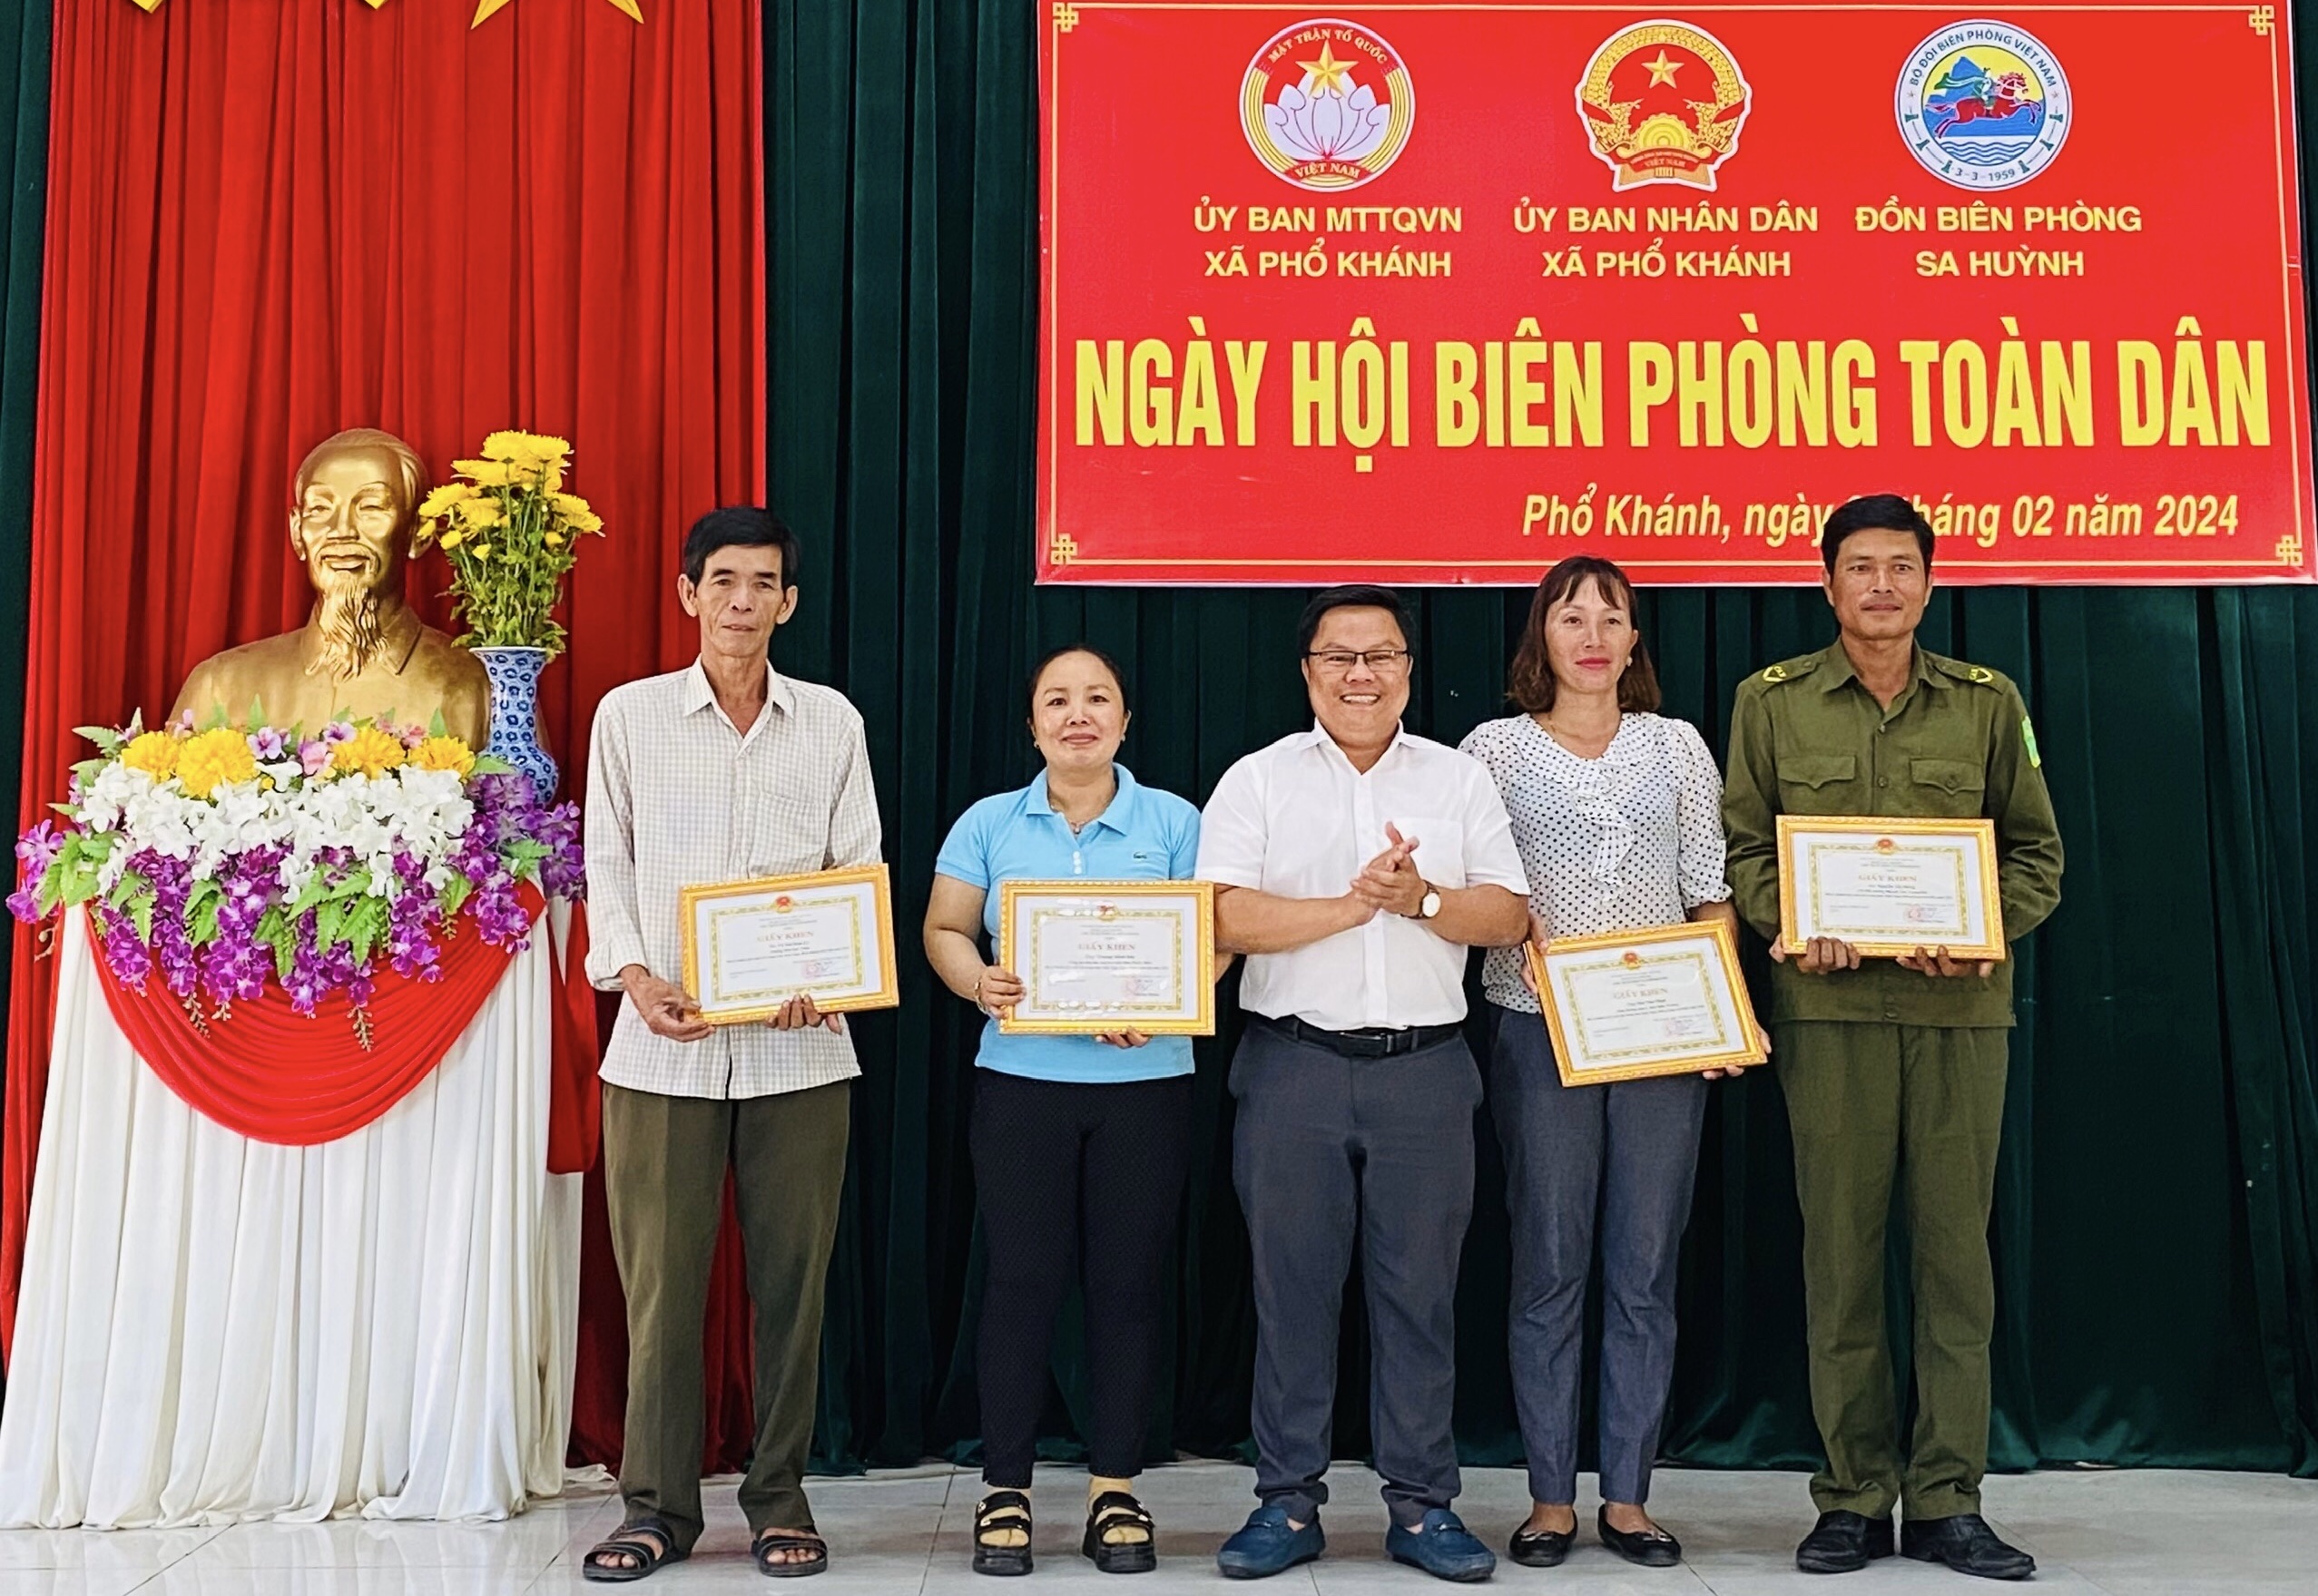 Xã Phổ Khánh tổ chức thành công ngày hội Biên phòng toàn dân năm 2024.